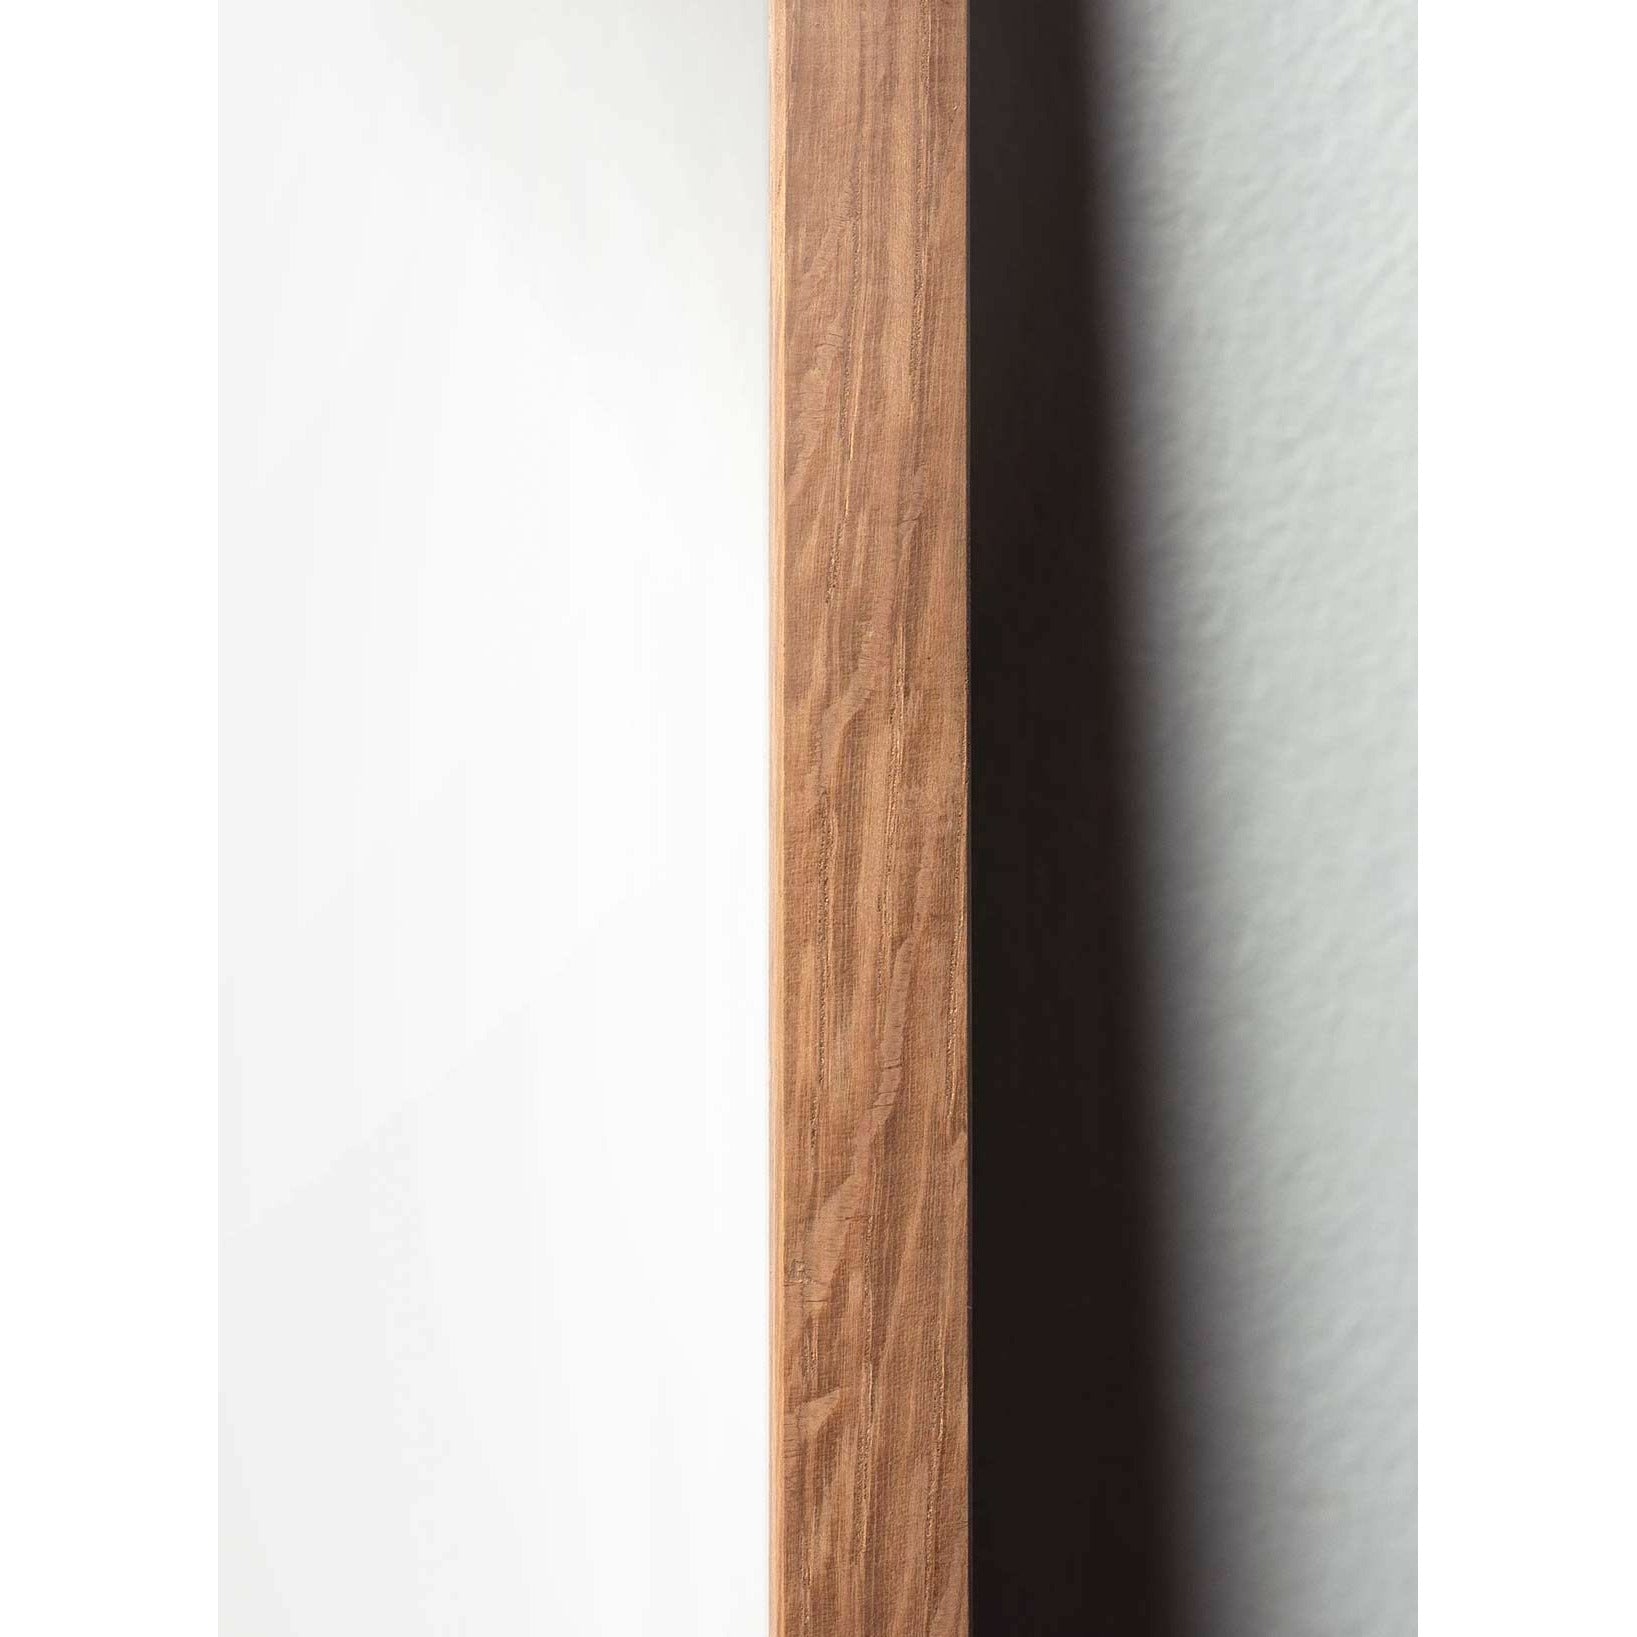 Poster della linea del cono di pino da un'idea, telaio in legno chiaro A5, sfondo bianco